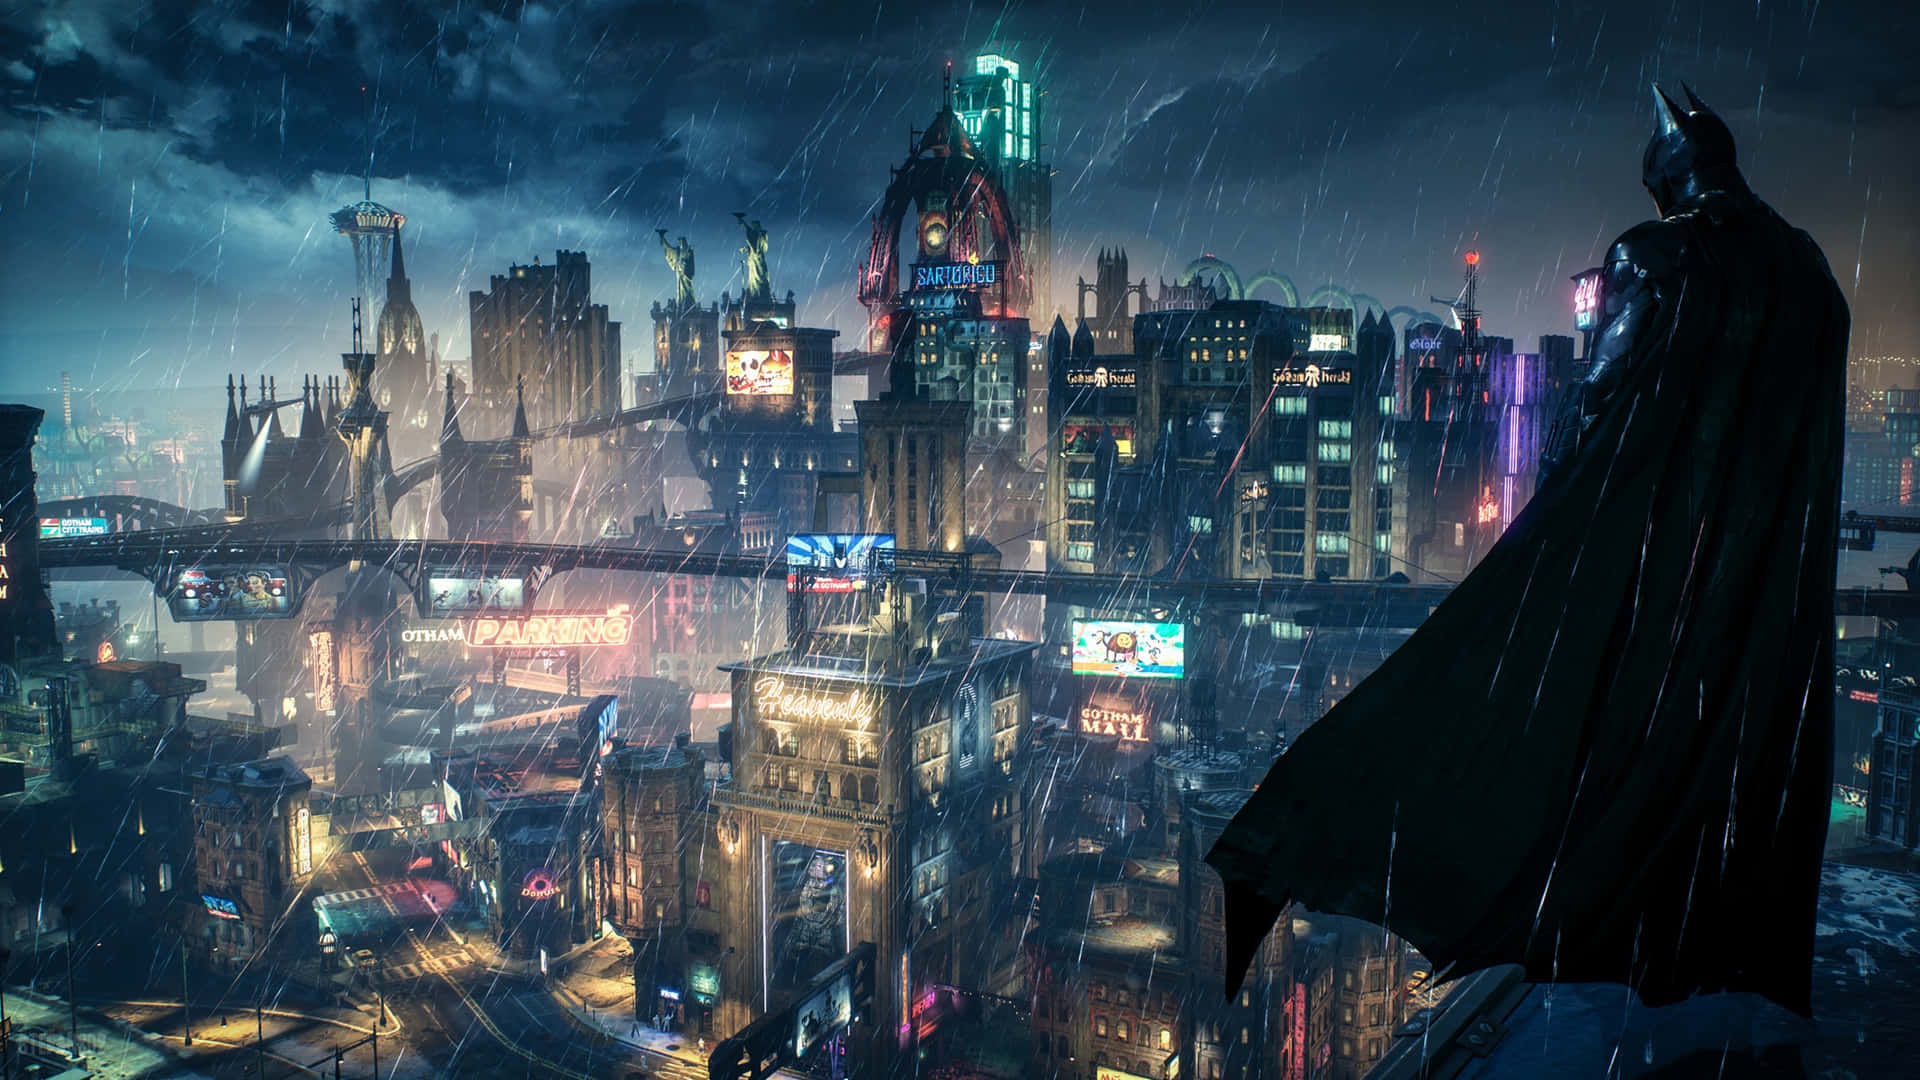 Únetea Batman En Su Épica Batalla Contra El Caos Y La Destrucción En La Ciudad De Gotham Con Batman: Arkham Knight. Fondo de pantalla